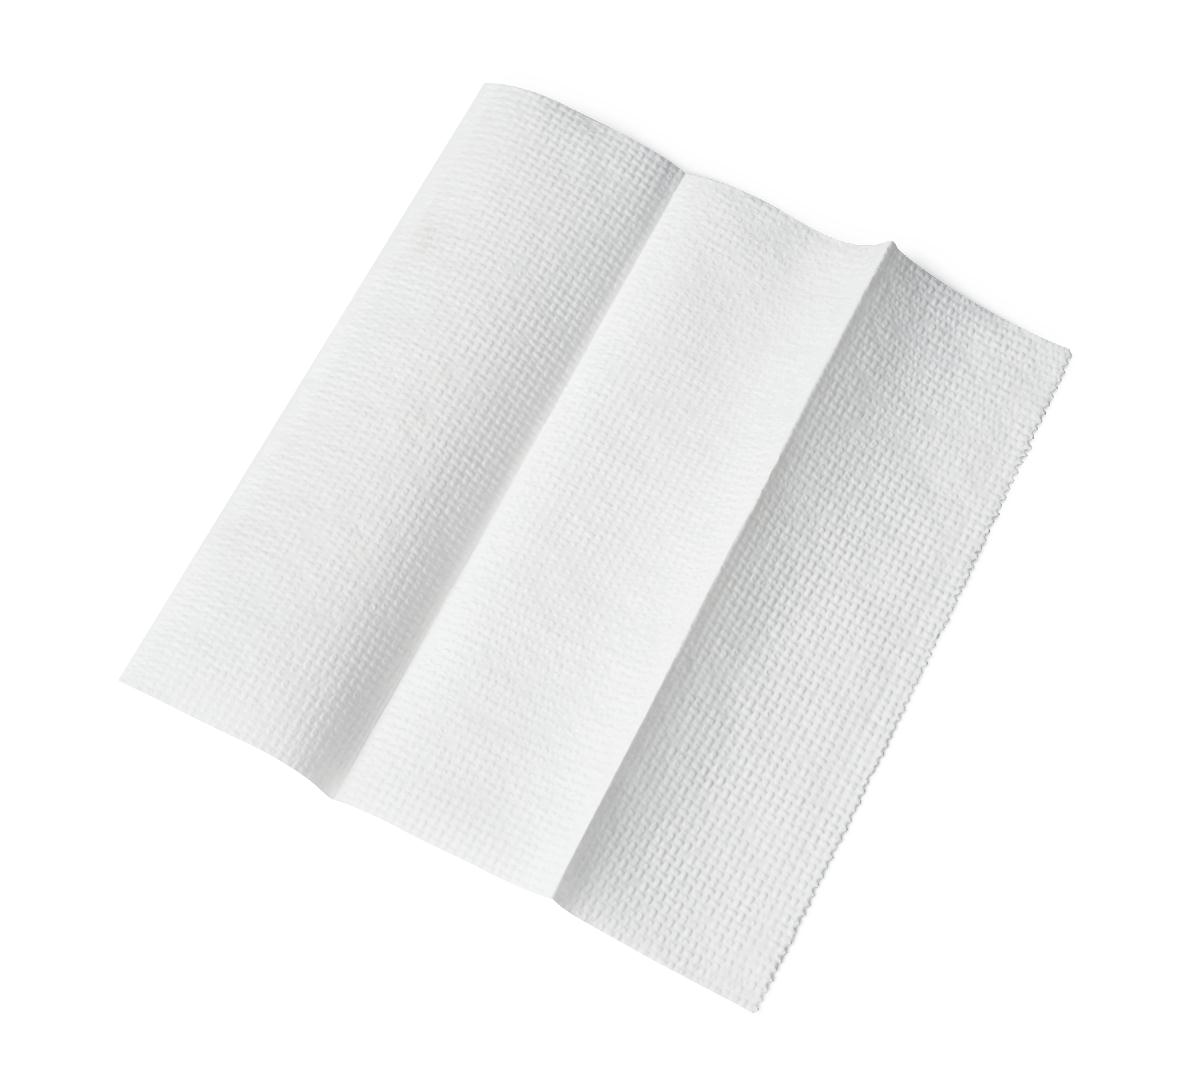 Medline Multifold Paper Towels